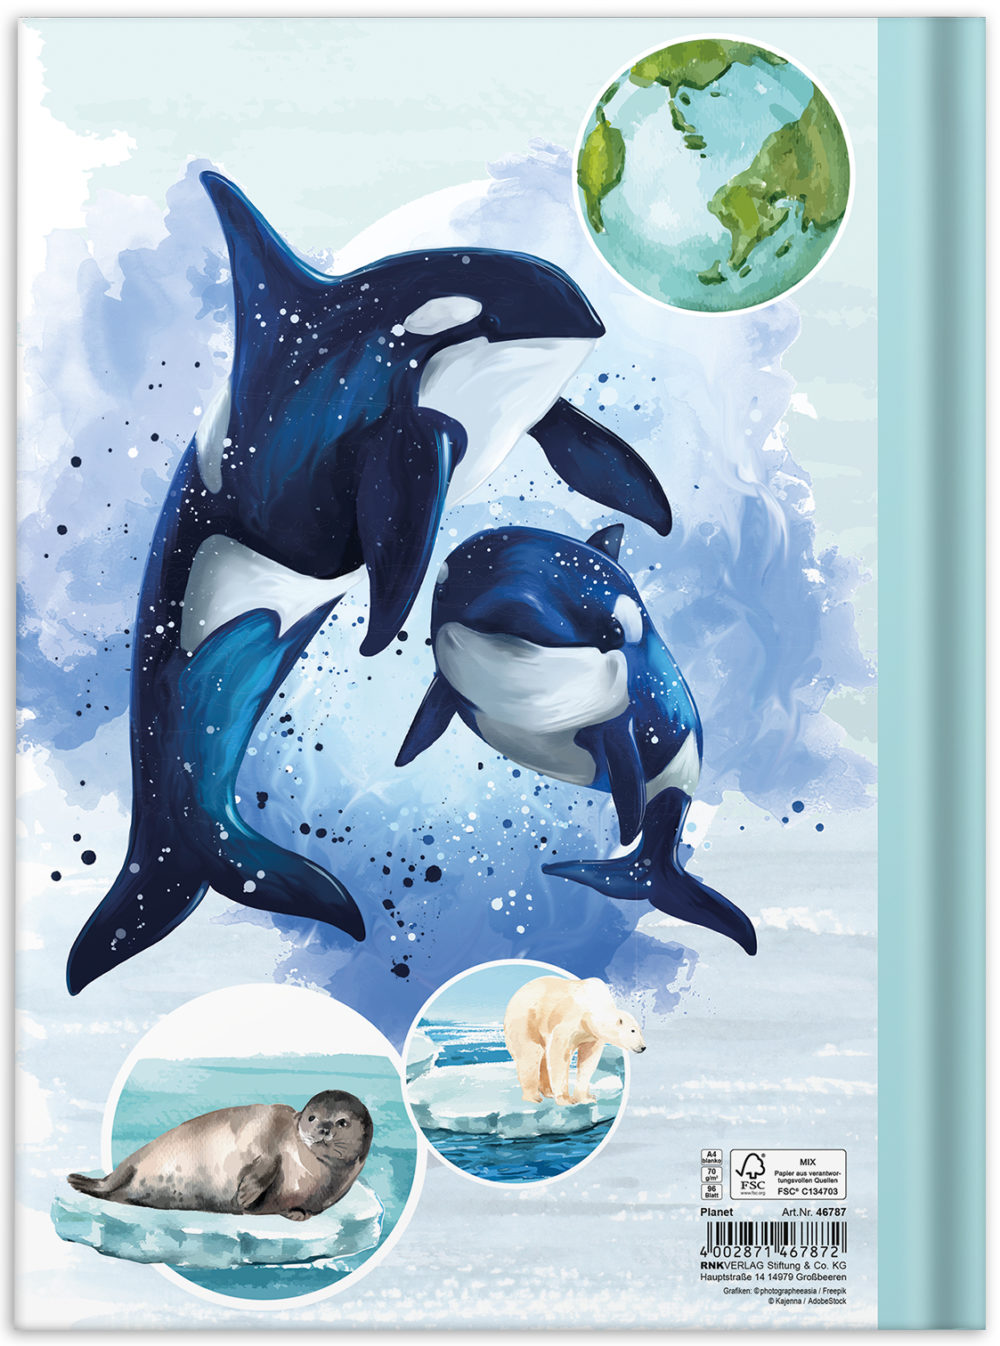 Notizbuch "Planet" mit Orcas auf der Rückseite